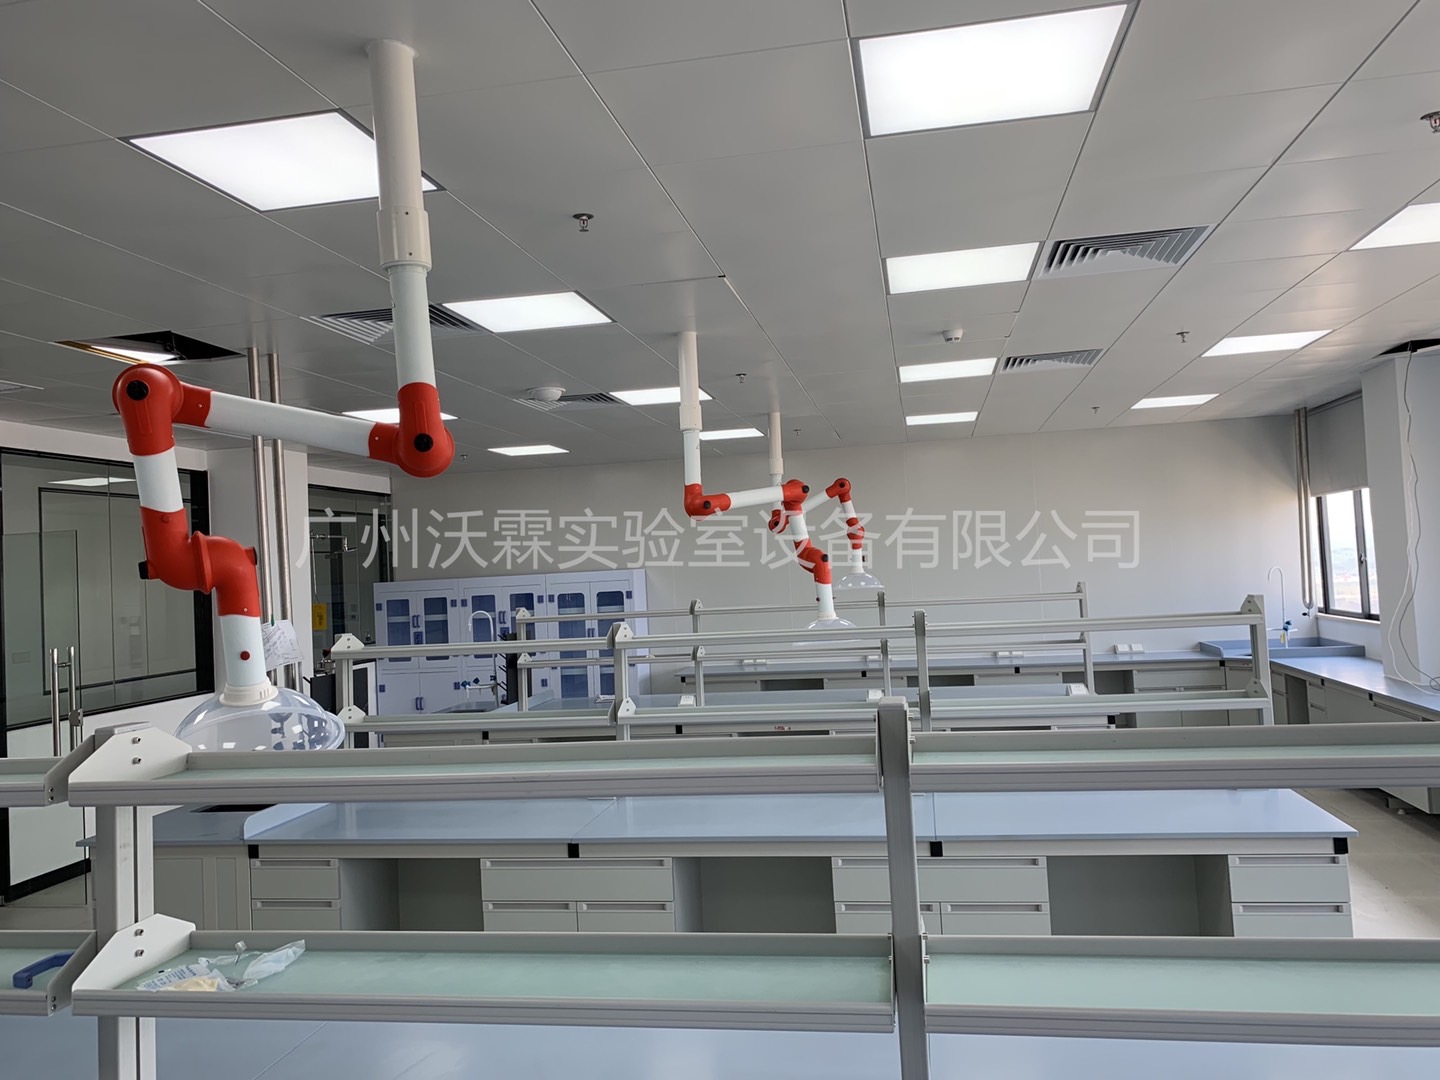 热烈祝贺广州康盛生物科技股份有限公司实验室项目顺利通过验收，获得专家高度肯定